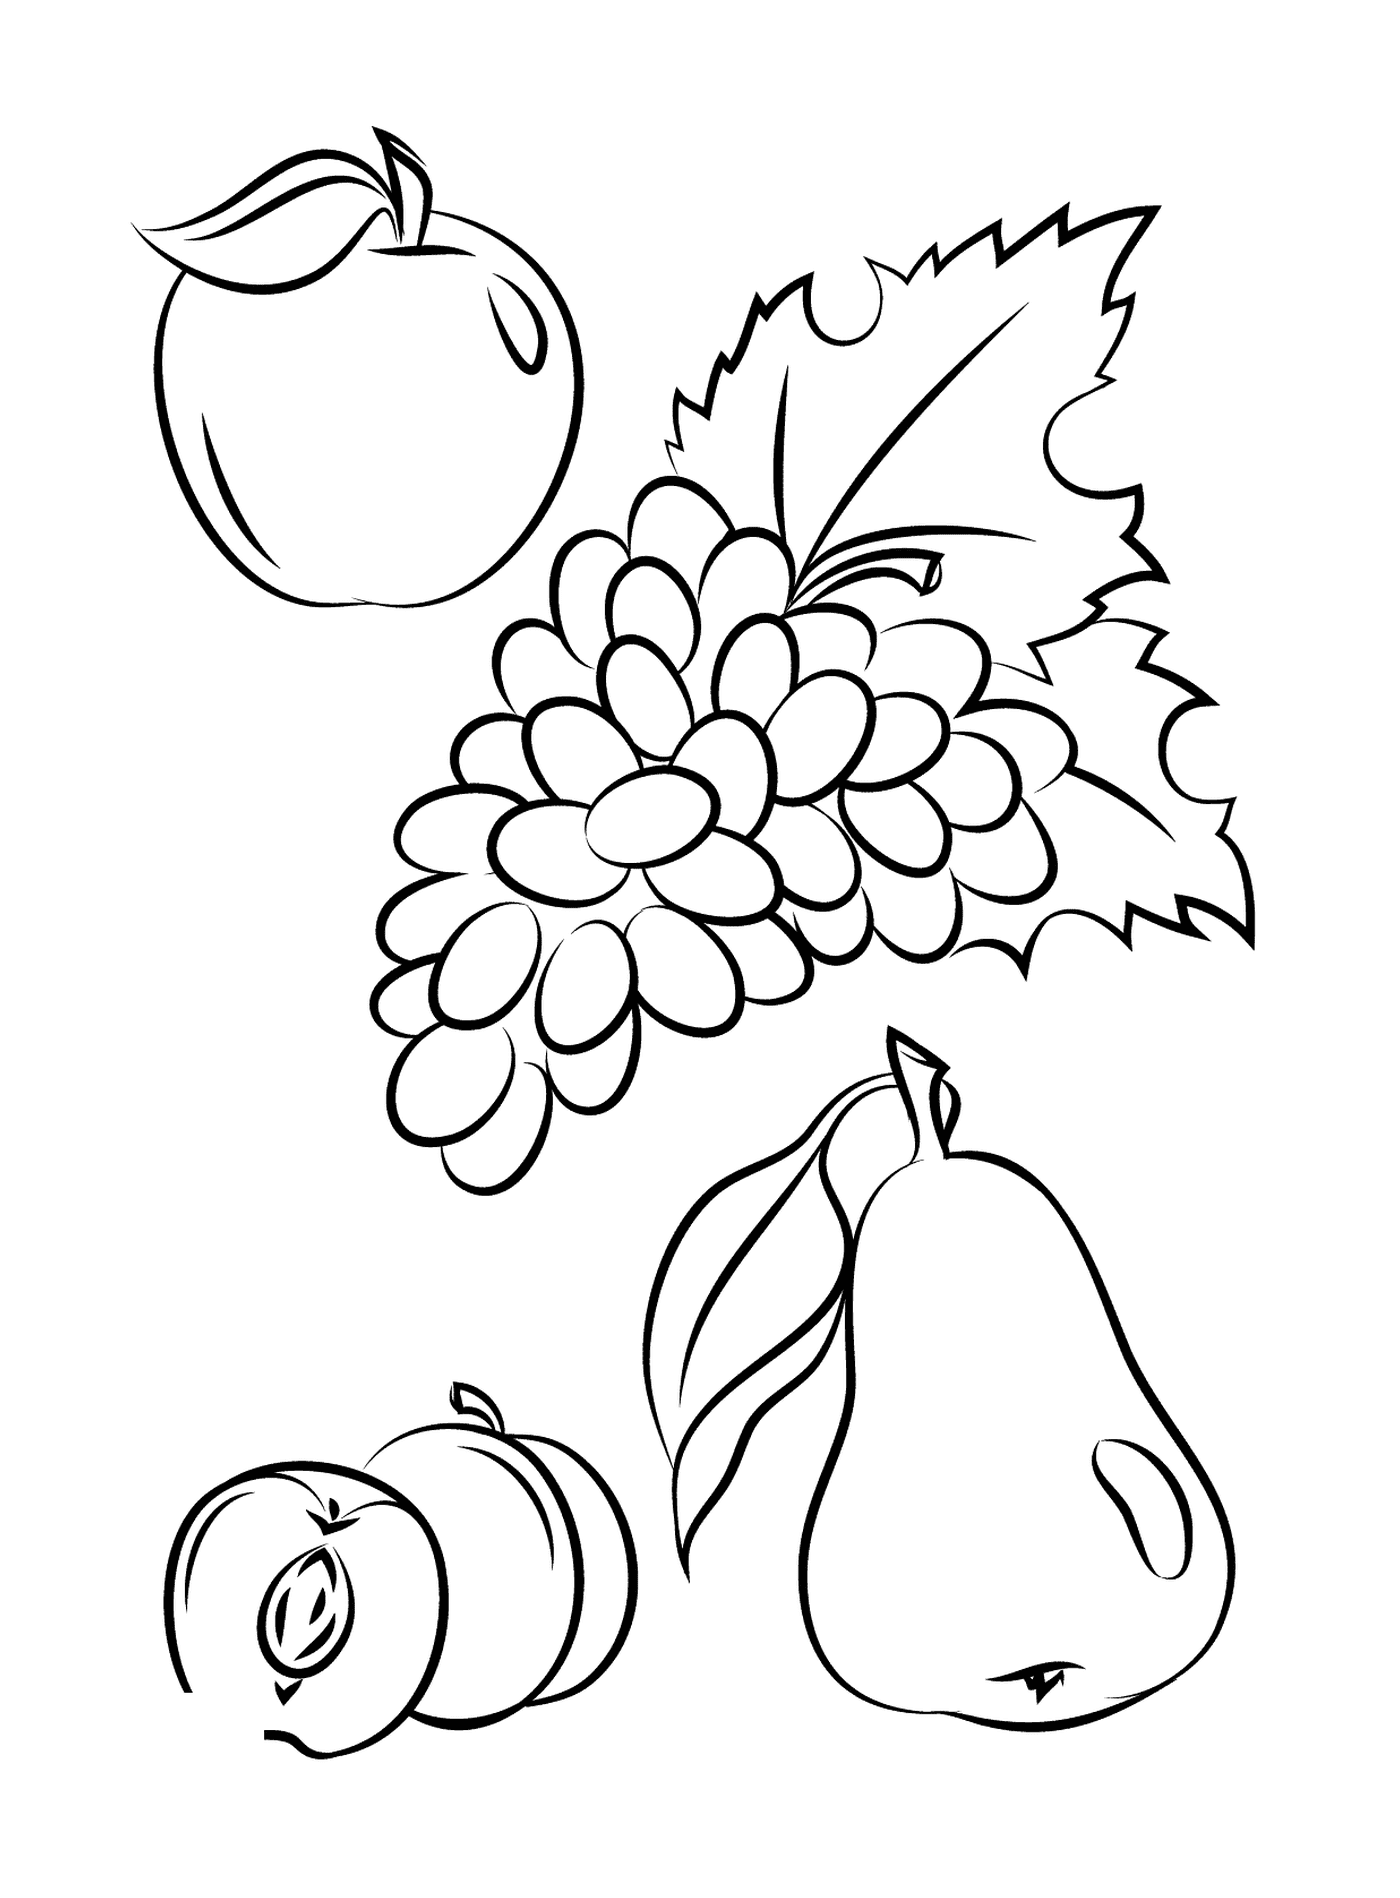  Яблоко, груша, виноград и щепотка 